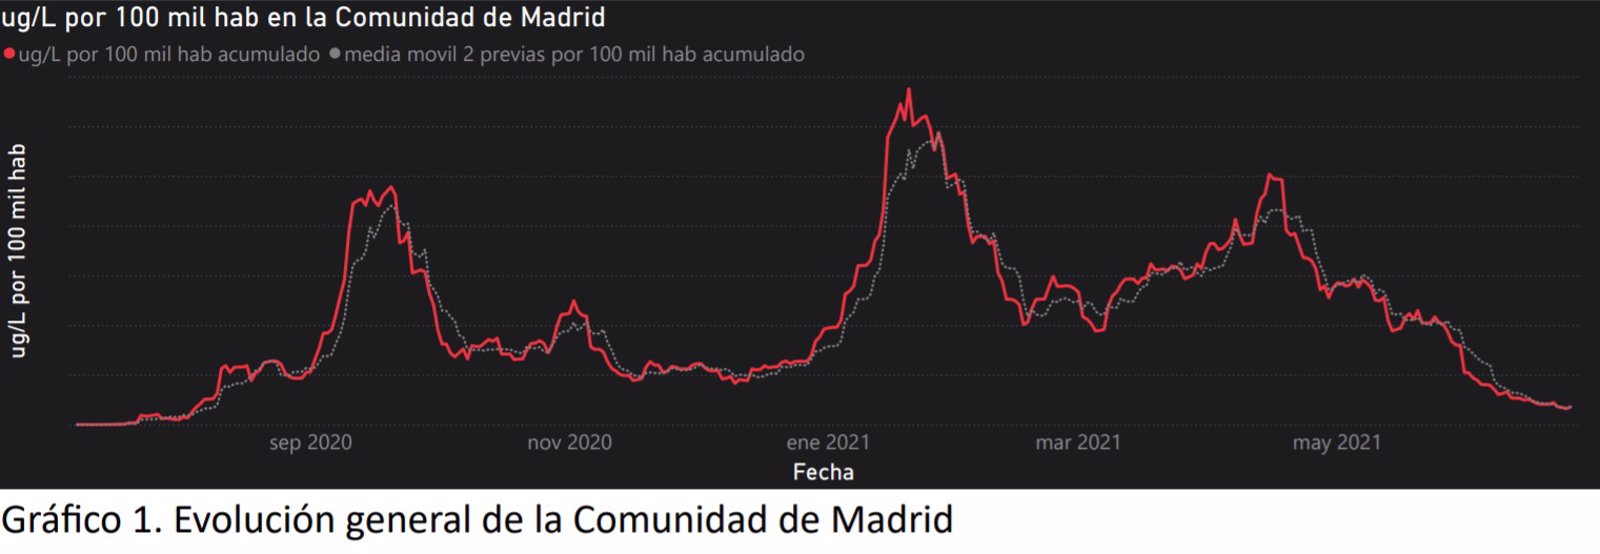 La presencia de Covid en aguas residuales madrileñas cae hasta mínimos pero aumenta en varios municipios